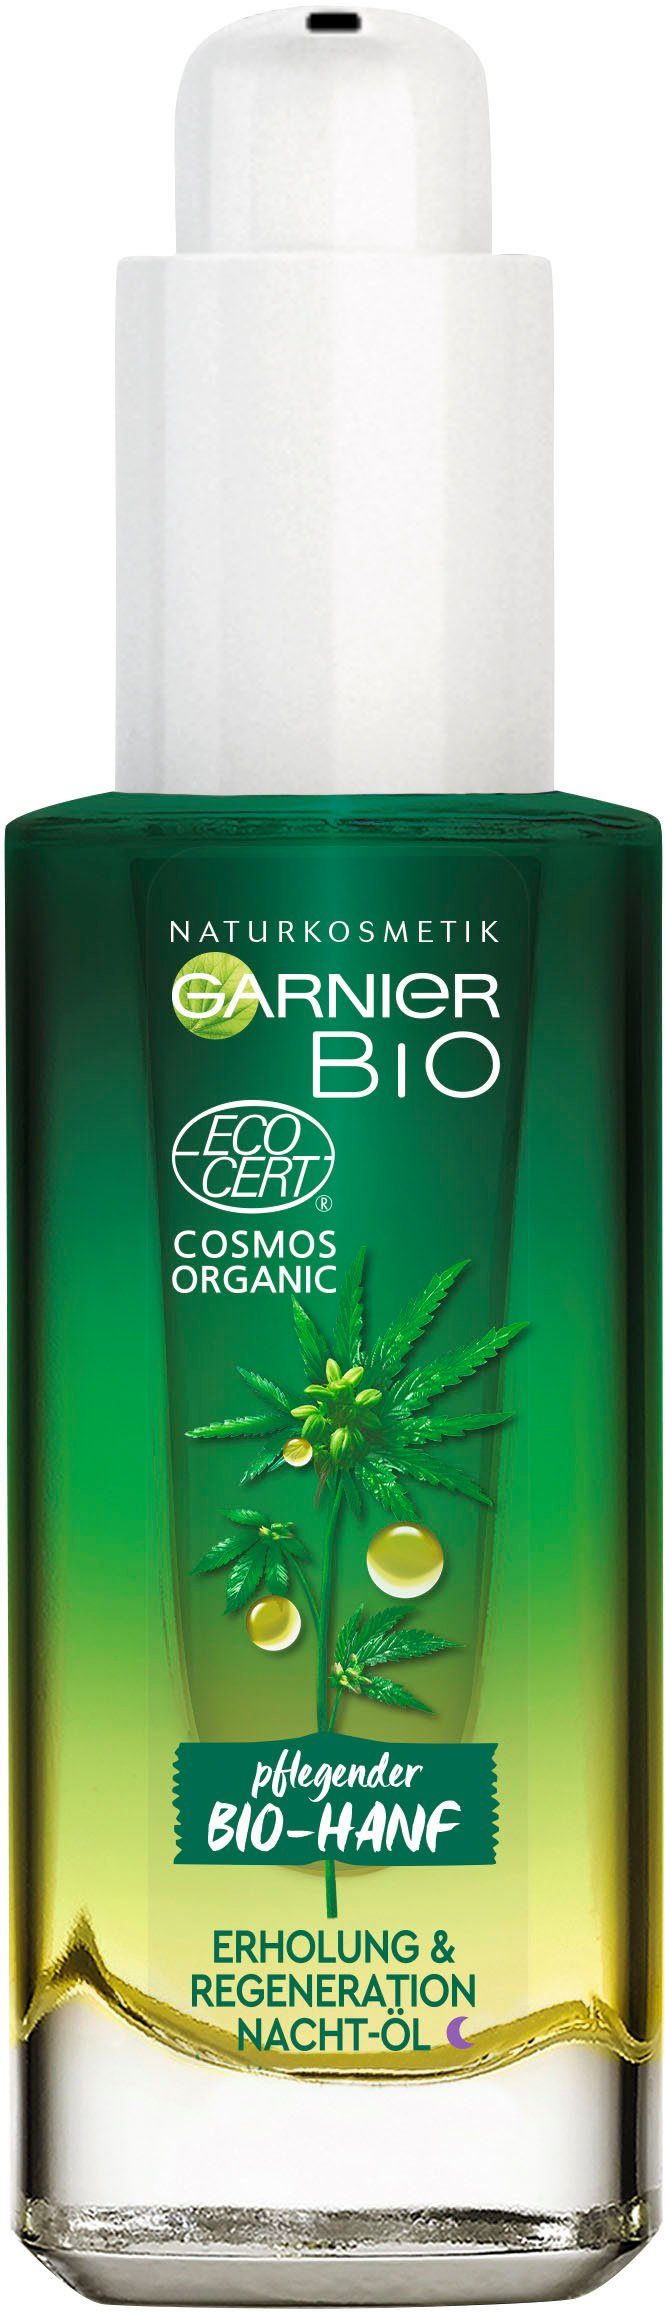 Gesichtsöl Erholung GARNIER Bio-Hanf Nacht-Öl, Naturkosmetik Regeneration &